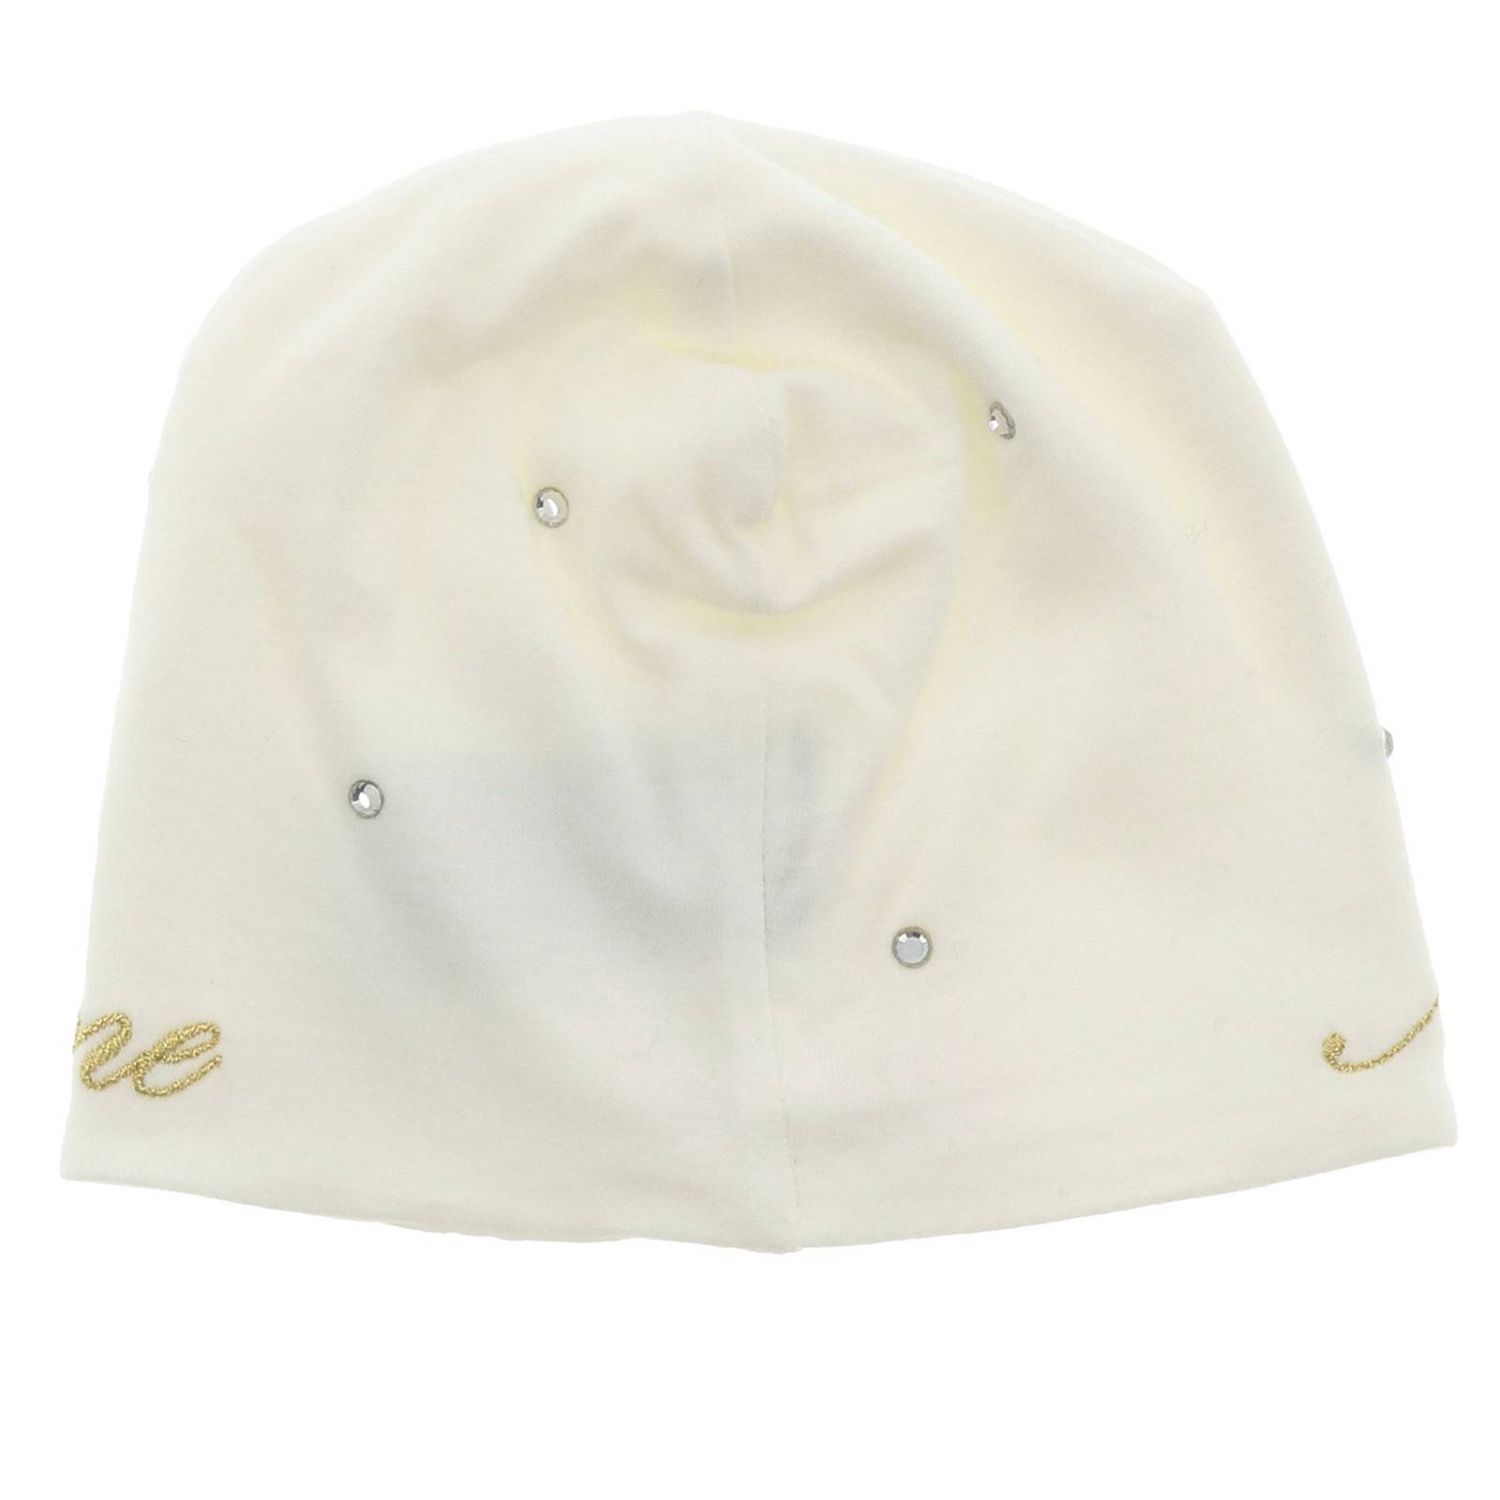 Hüte für Mädchen Miss Blumarine: Hut mädchen kinder Miss Blumarine yellow cream 2